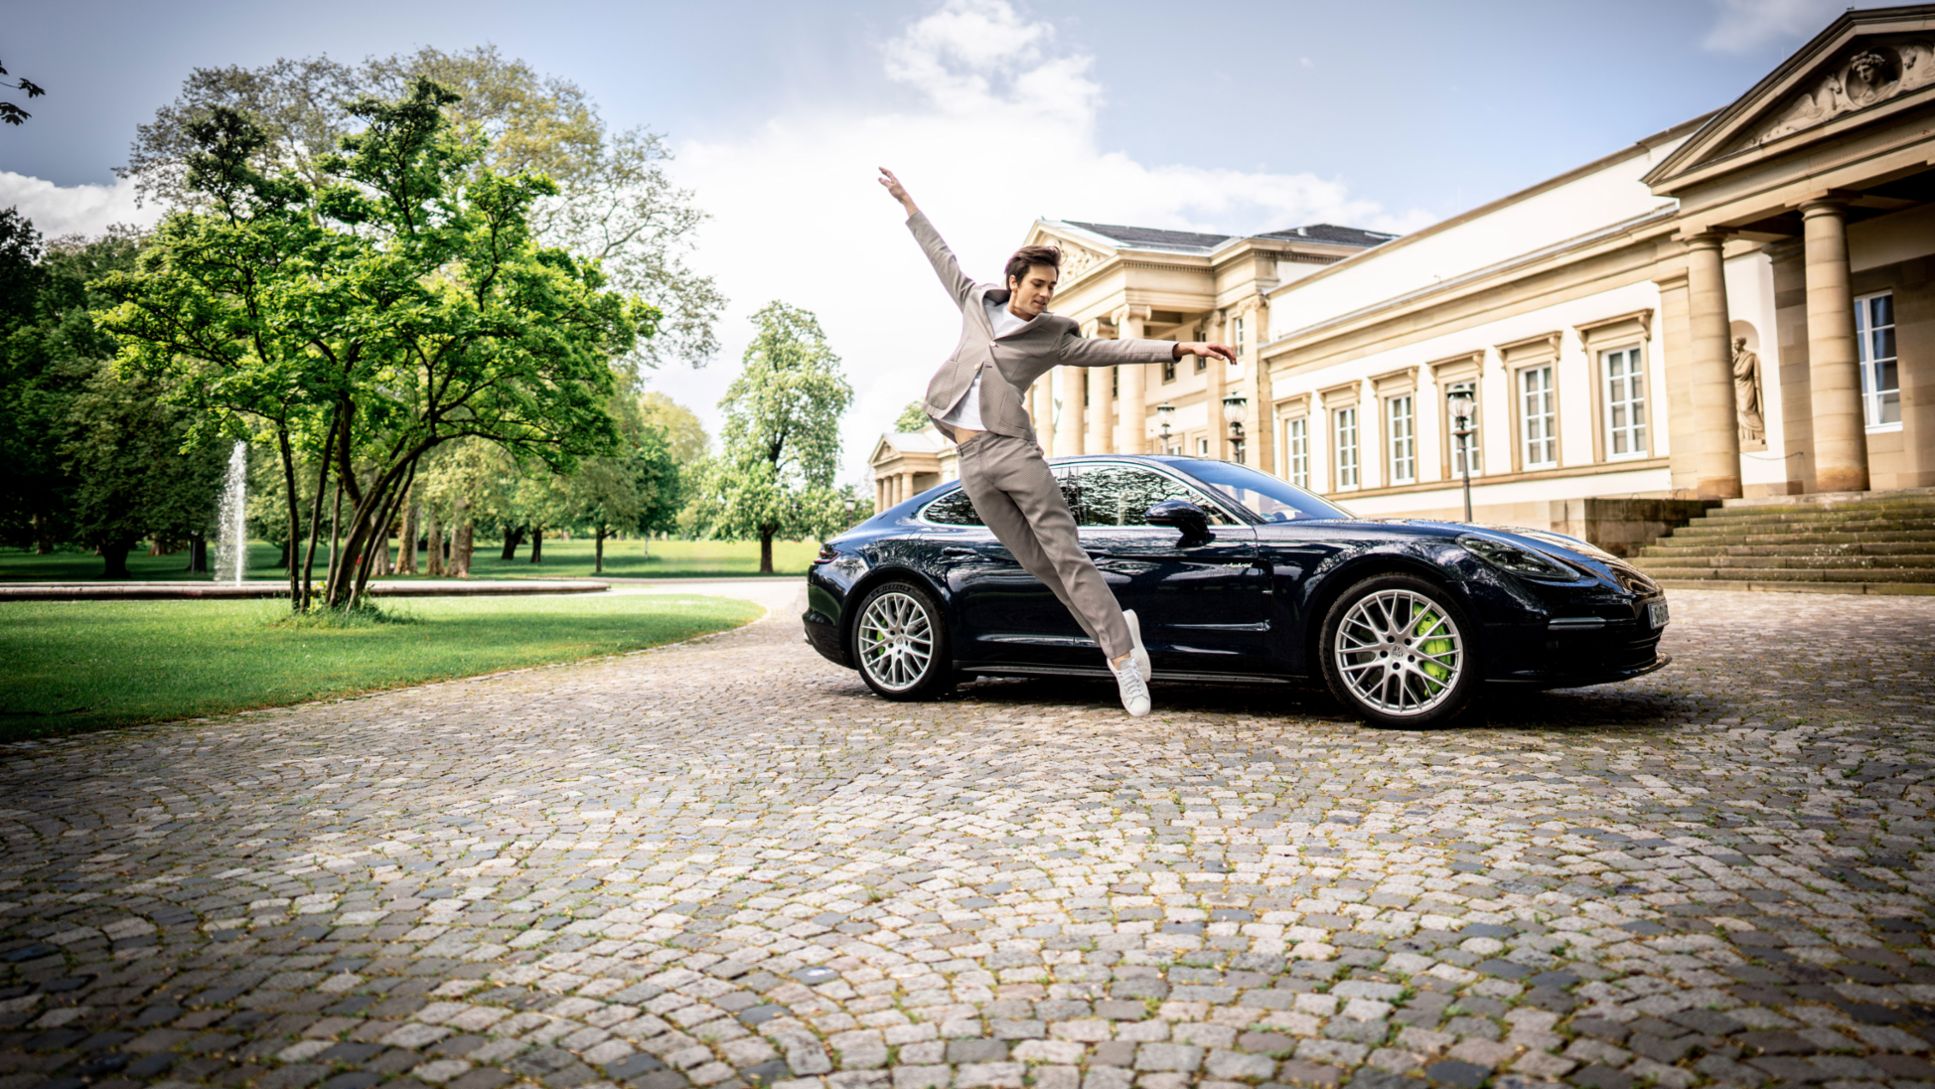 Friedemann Vogel, ballet dancer, Panamera Turbo S E-Hybrid, Rosenstein Castle, Stuttgart, 2019, Porsche AG